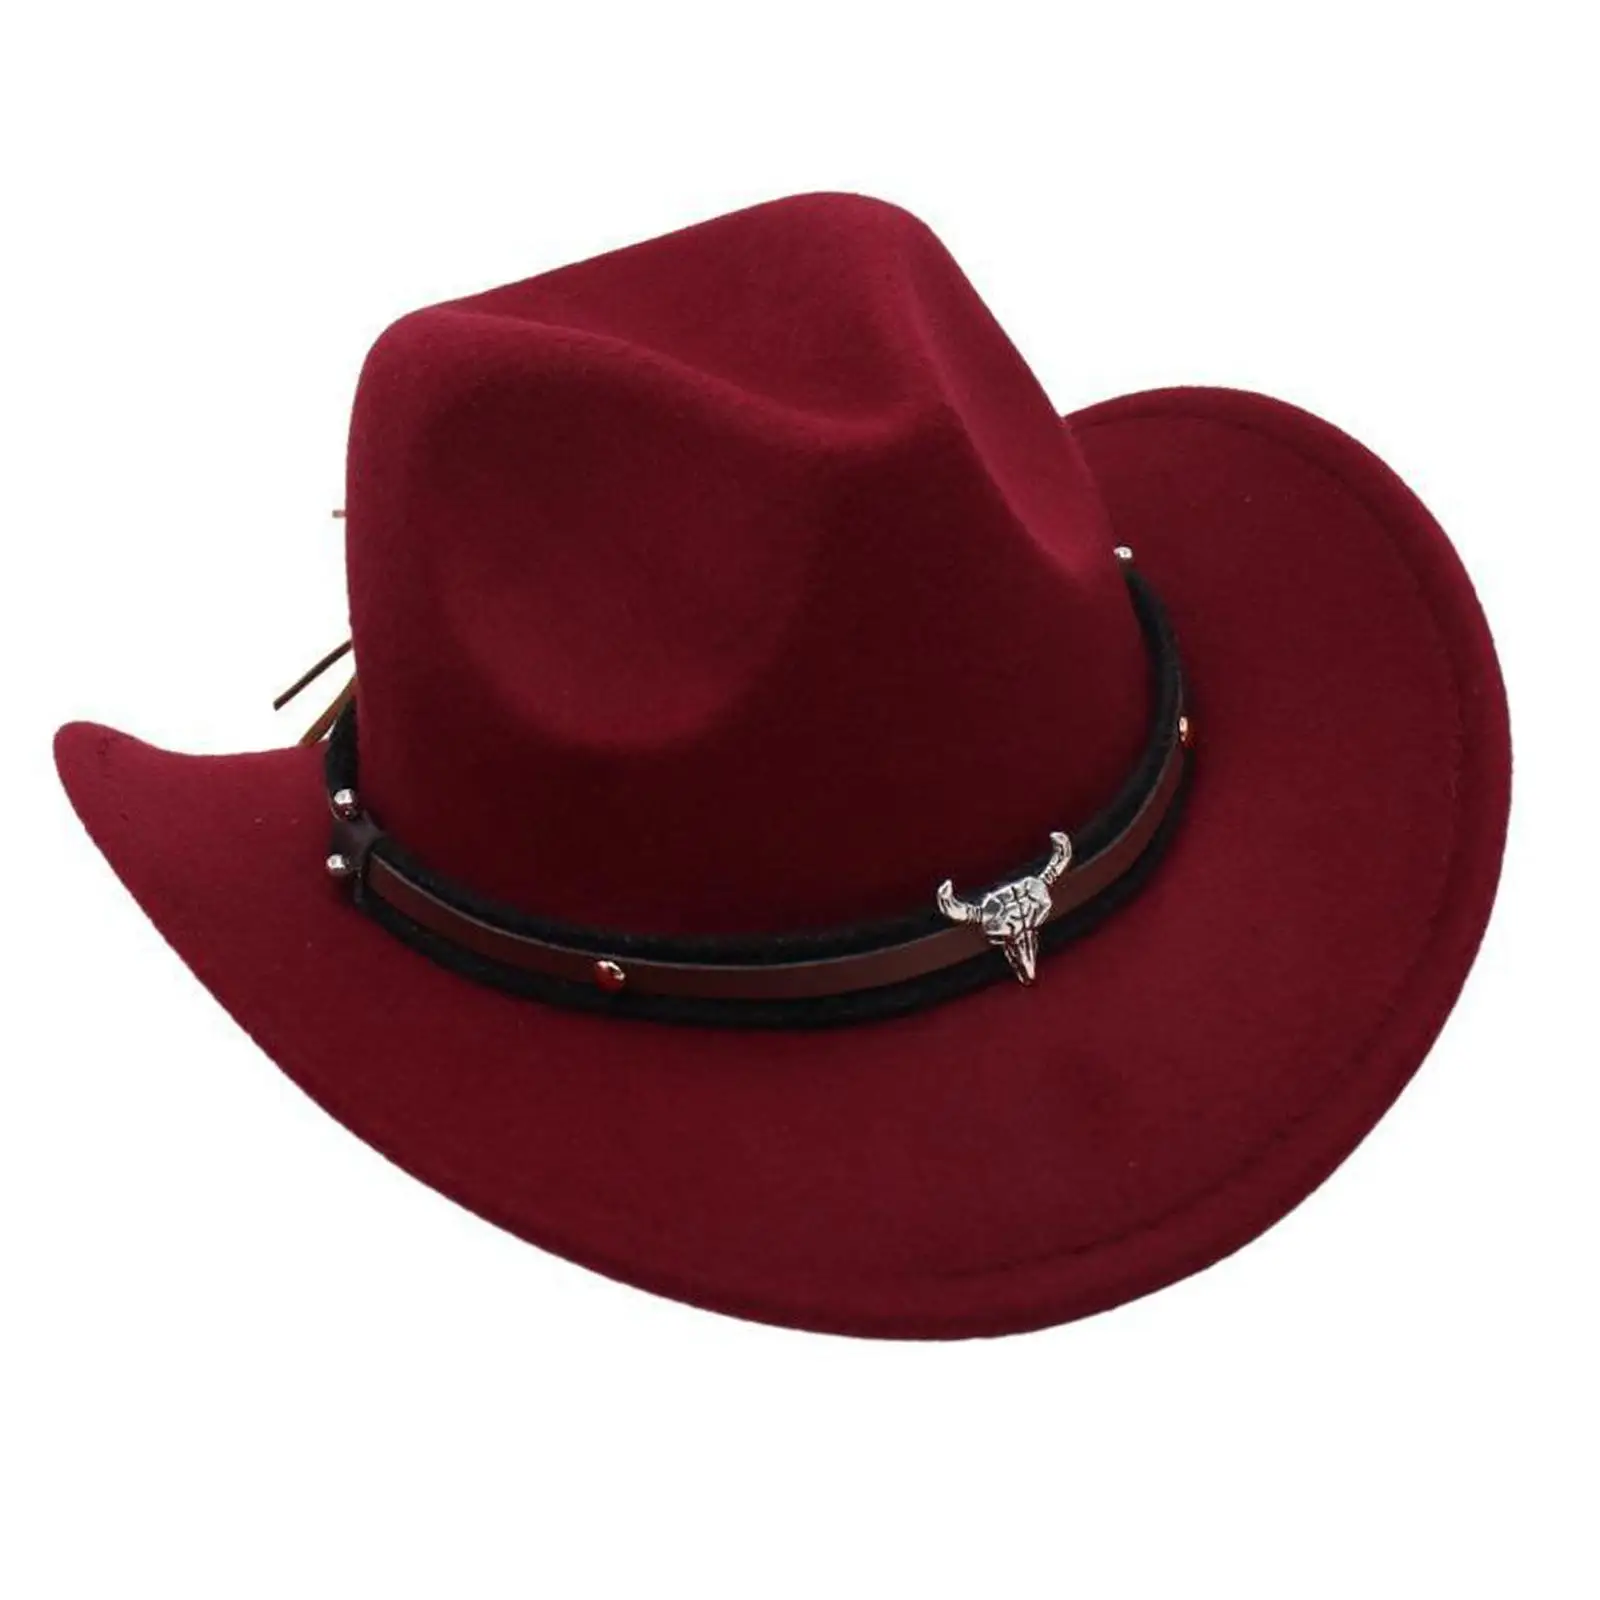 Batı kovboy şapkası Erkek Kız Yaz Gelin Nişan Parti Fotoğraf Sahne Rahat Açık Seyahat Kamp geniş şapka disko şapkası